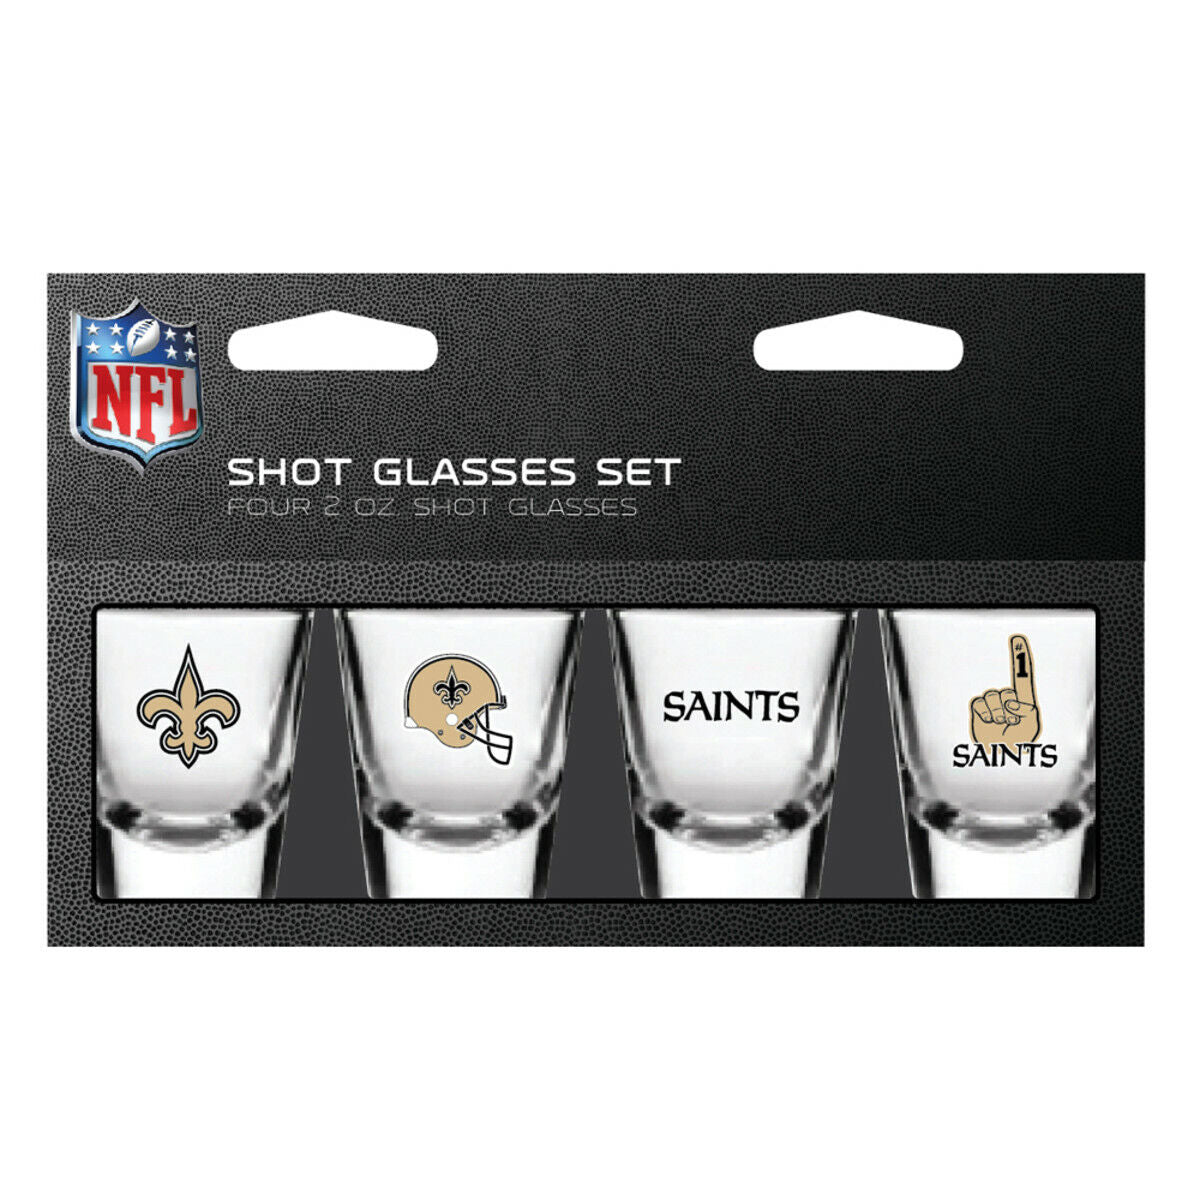 New Orleans Saints Shot Glasses Set Four 2oz